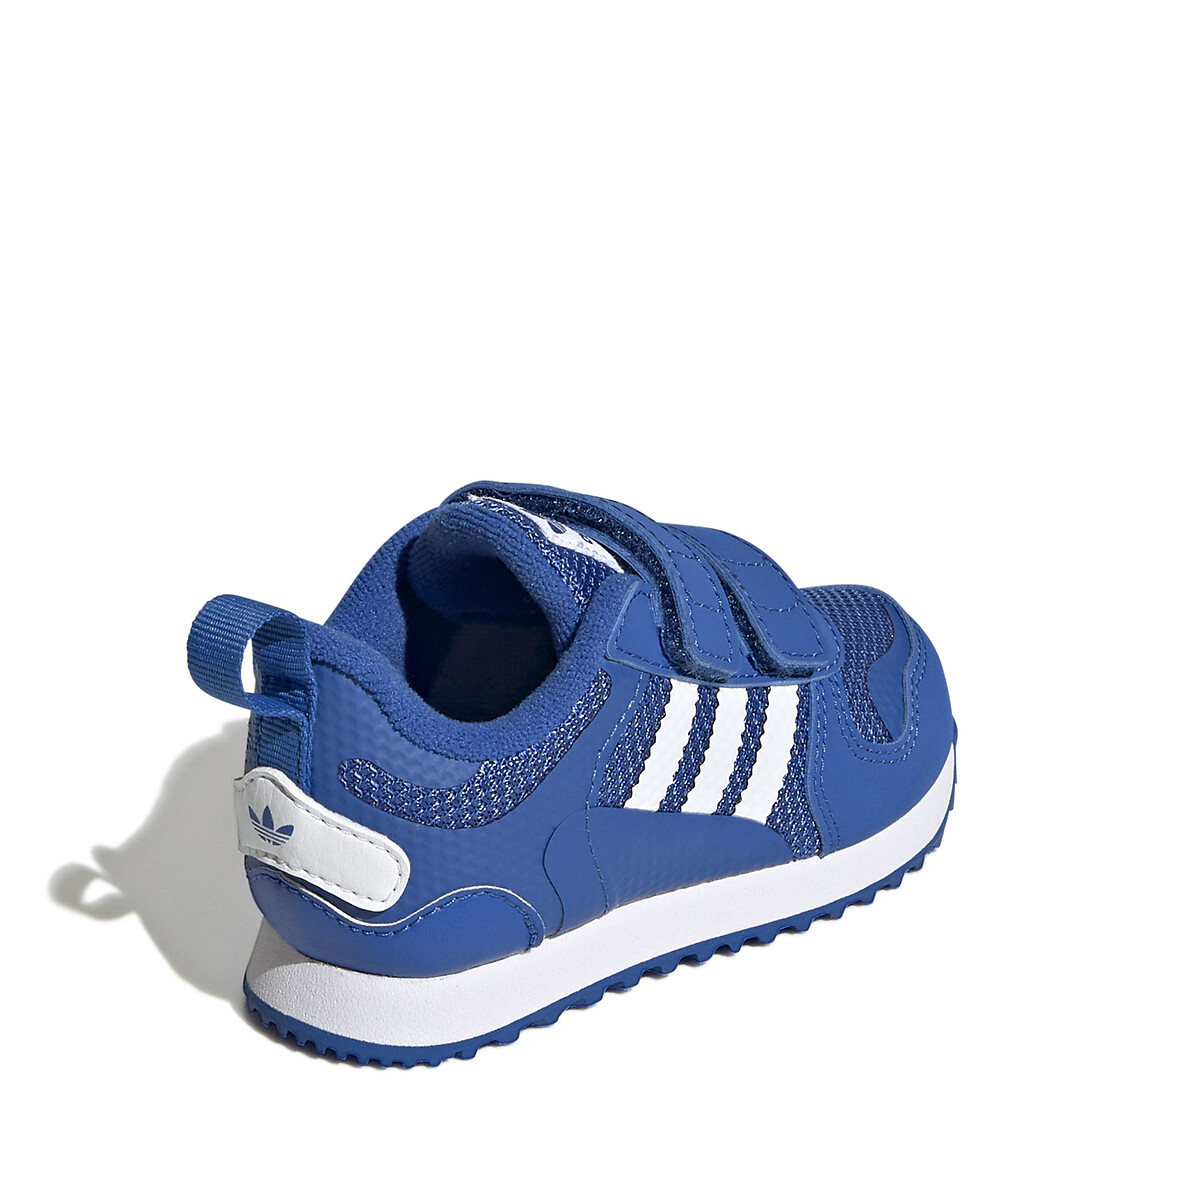 Mentalidad ampliar Abrazadera Zapatillas zx 700 azul Adidas Originals | La Redoute